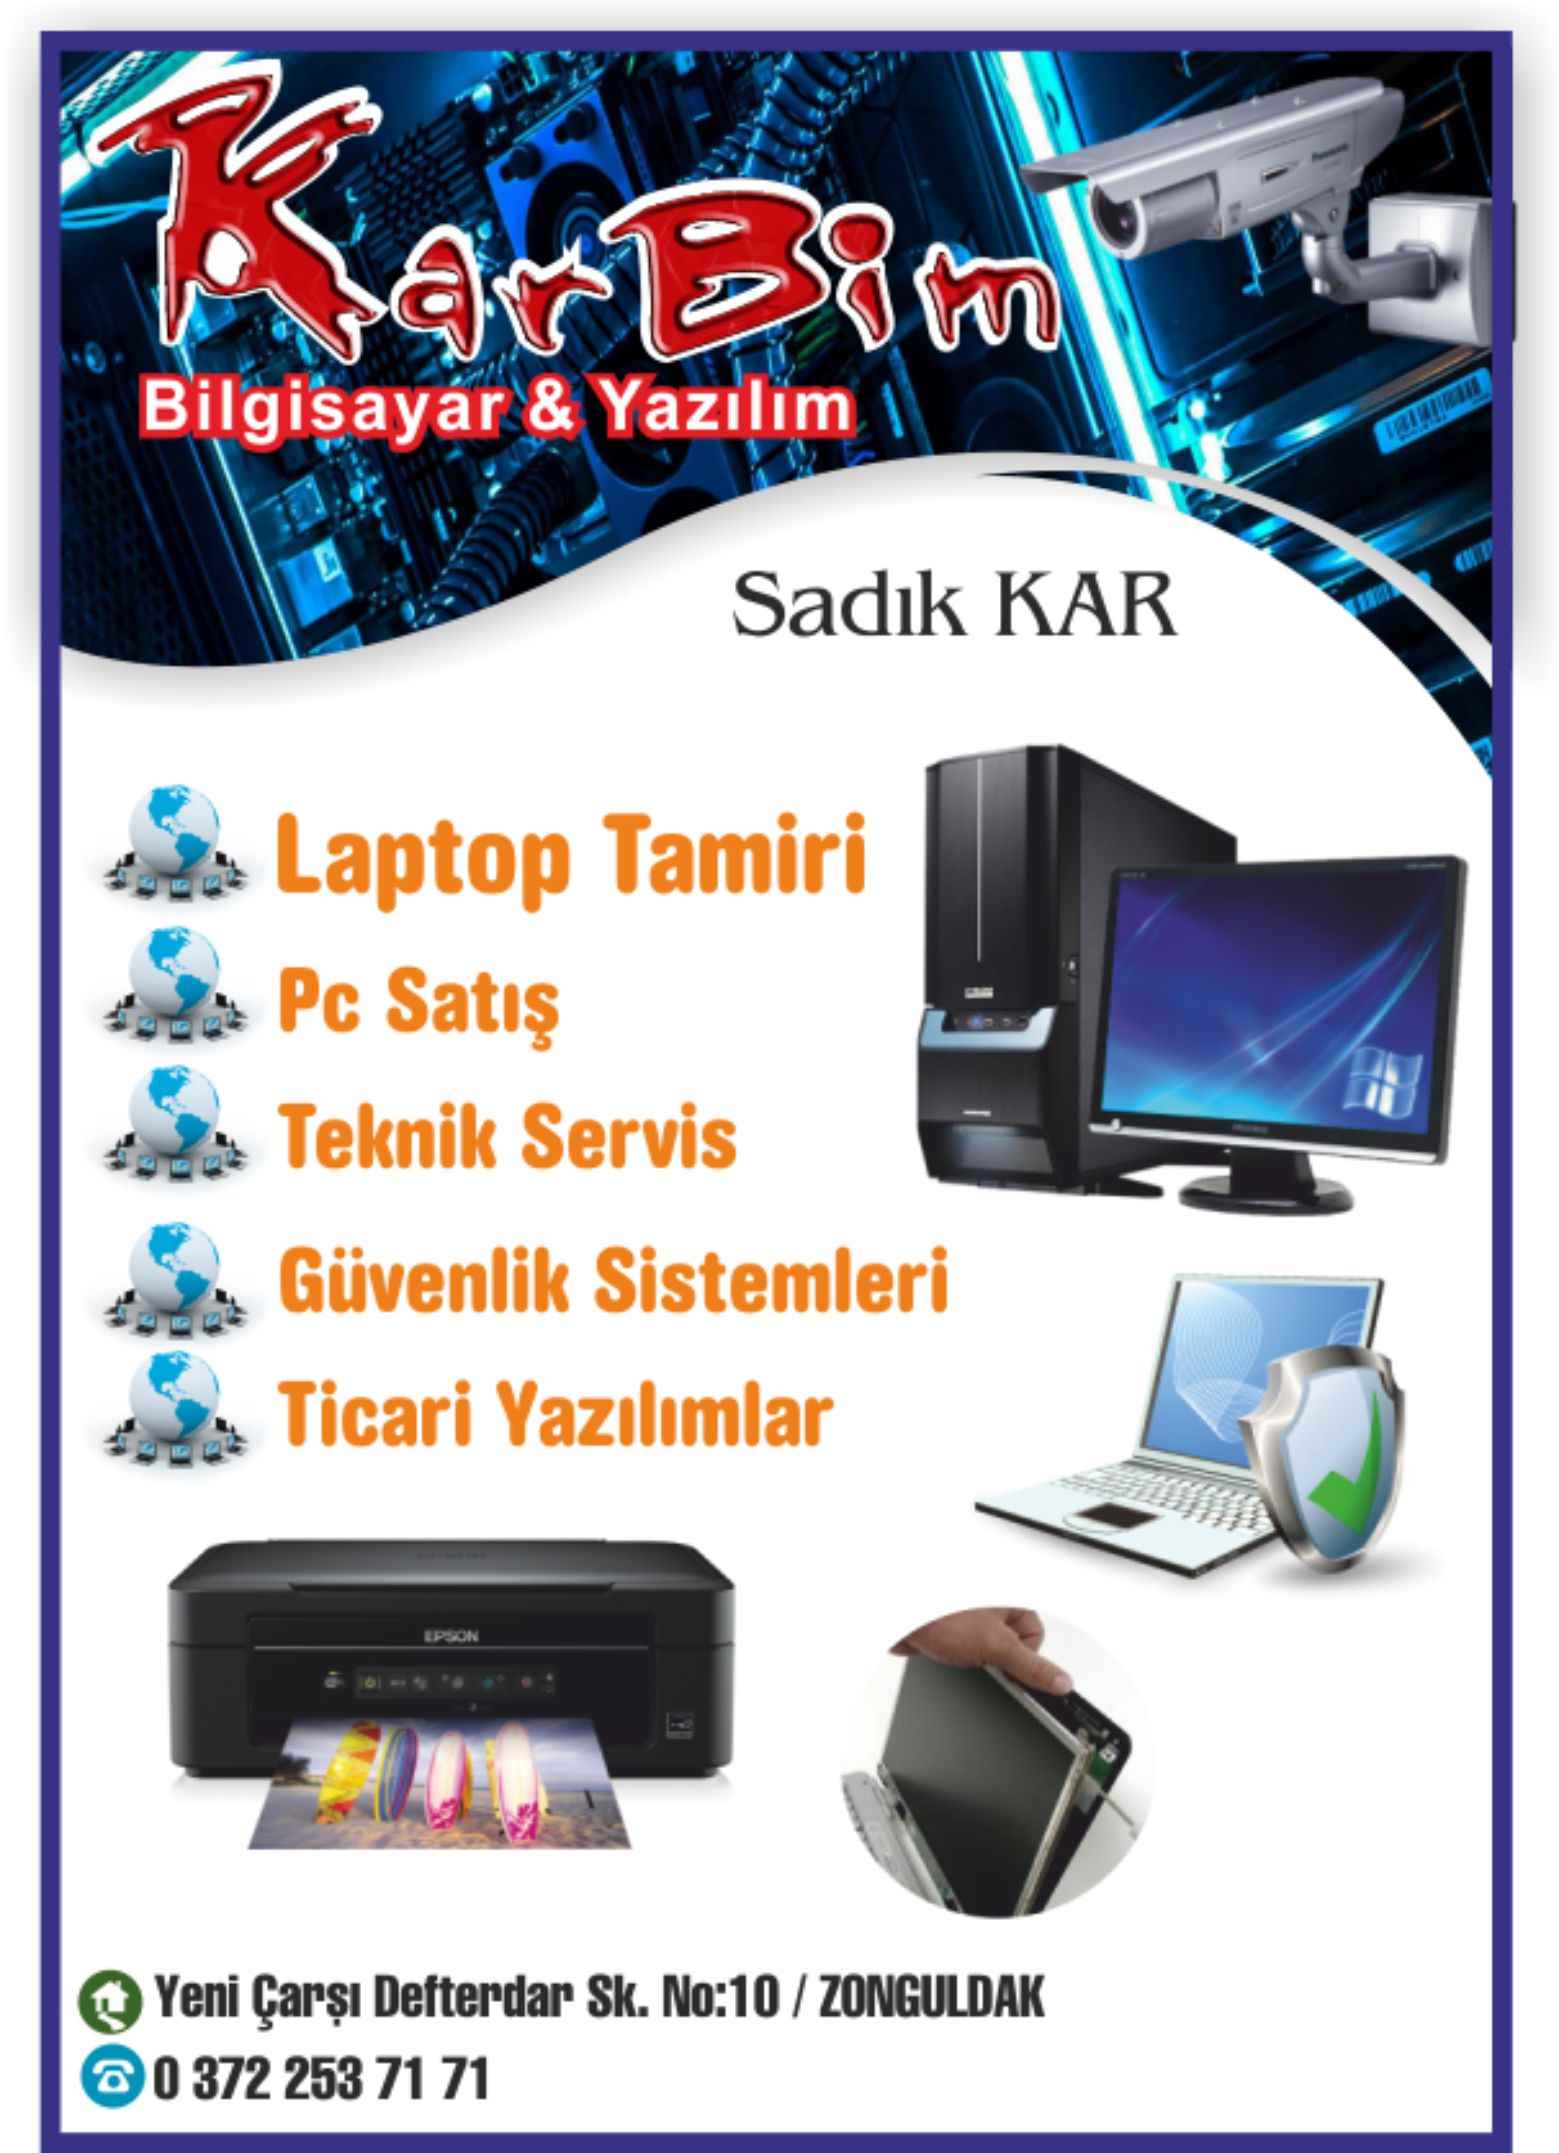 Karbim Bilgisayar Yazılım Zonguldak